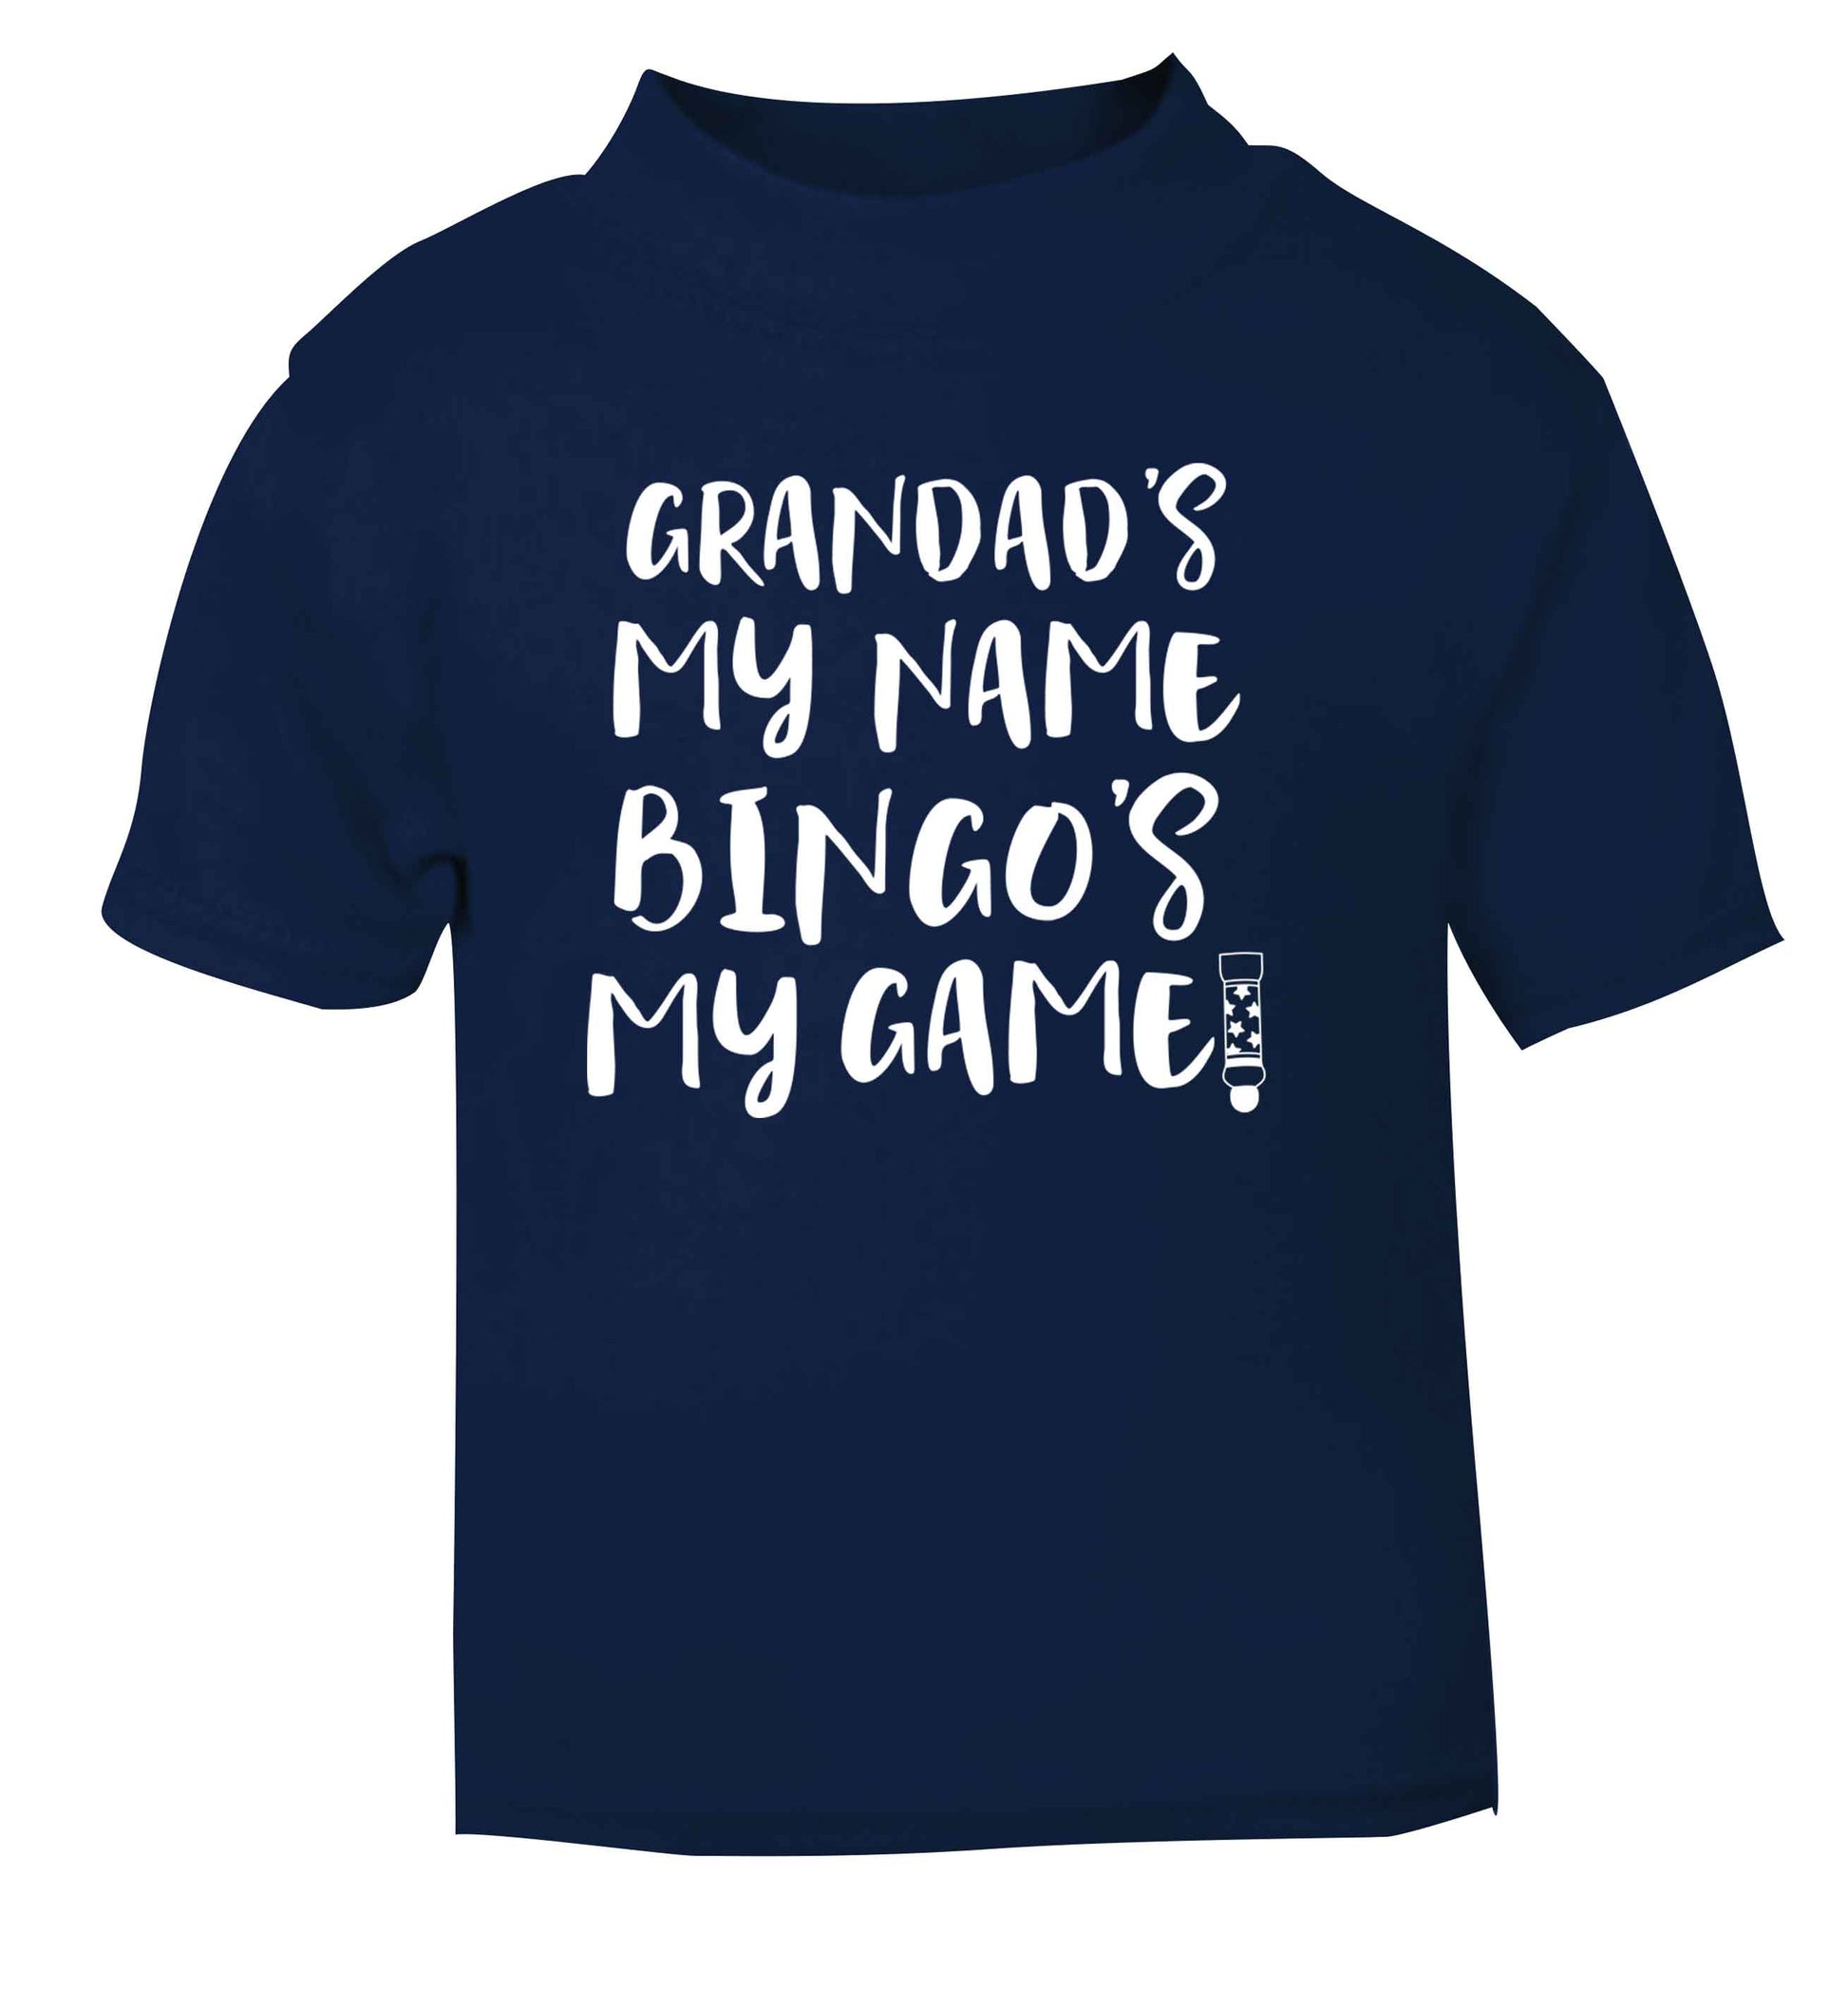 Grandad's my name bingo's my game! navy Baby Toddler Tshirt 2 Years